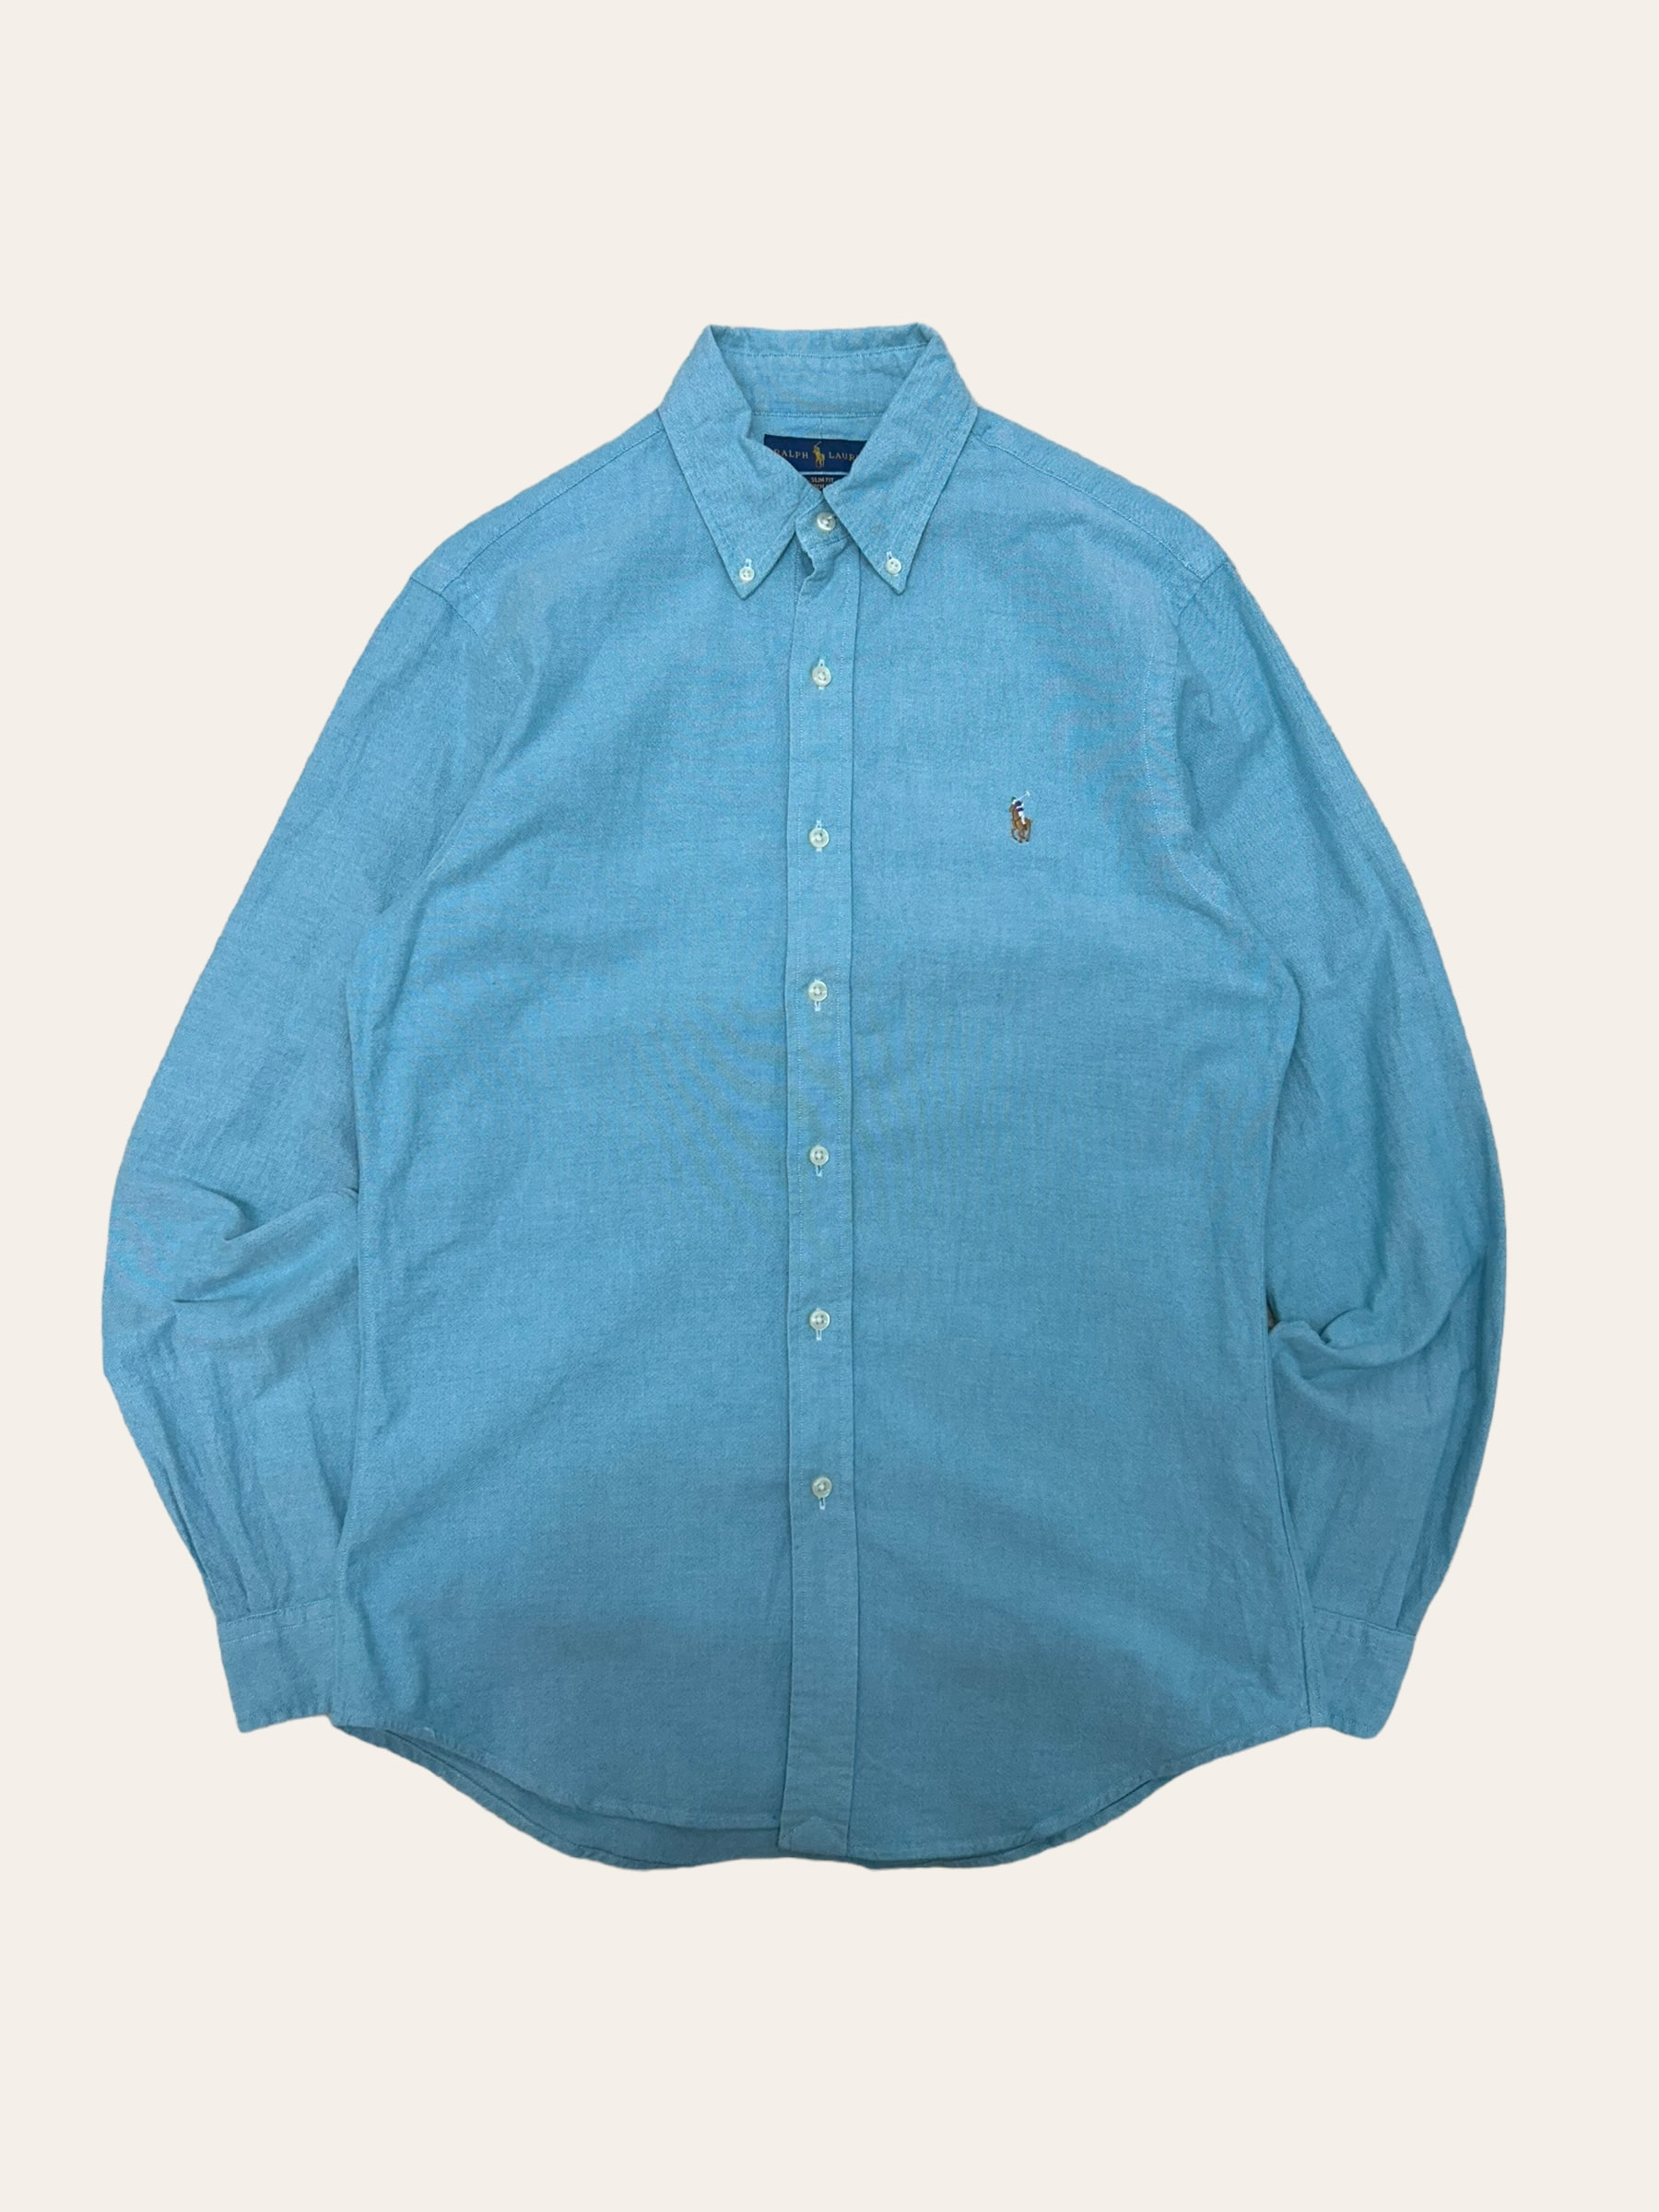 (From USA)Polo ralph lauren sky blue oxford shirt M